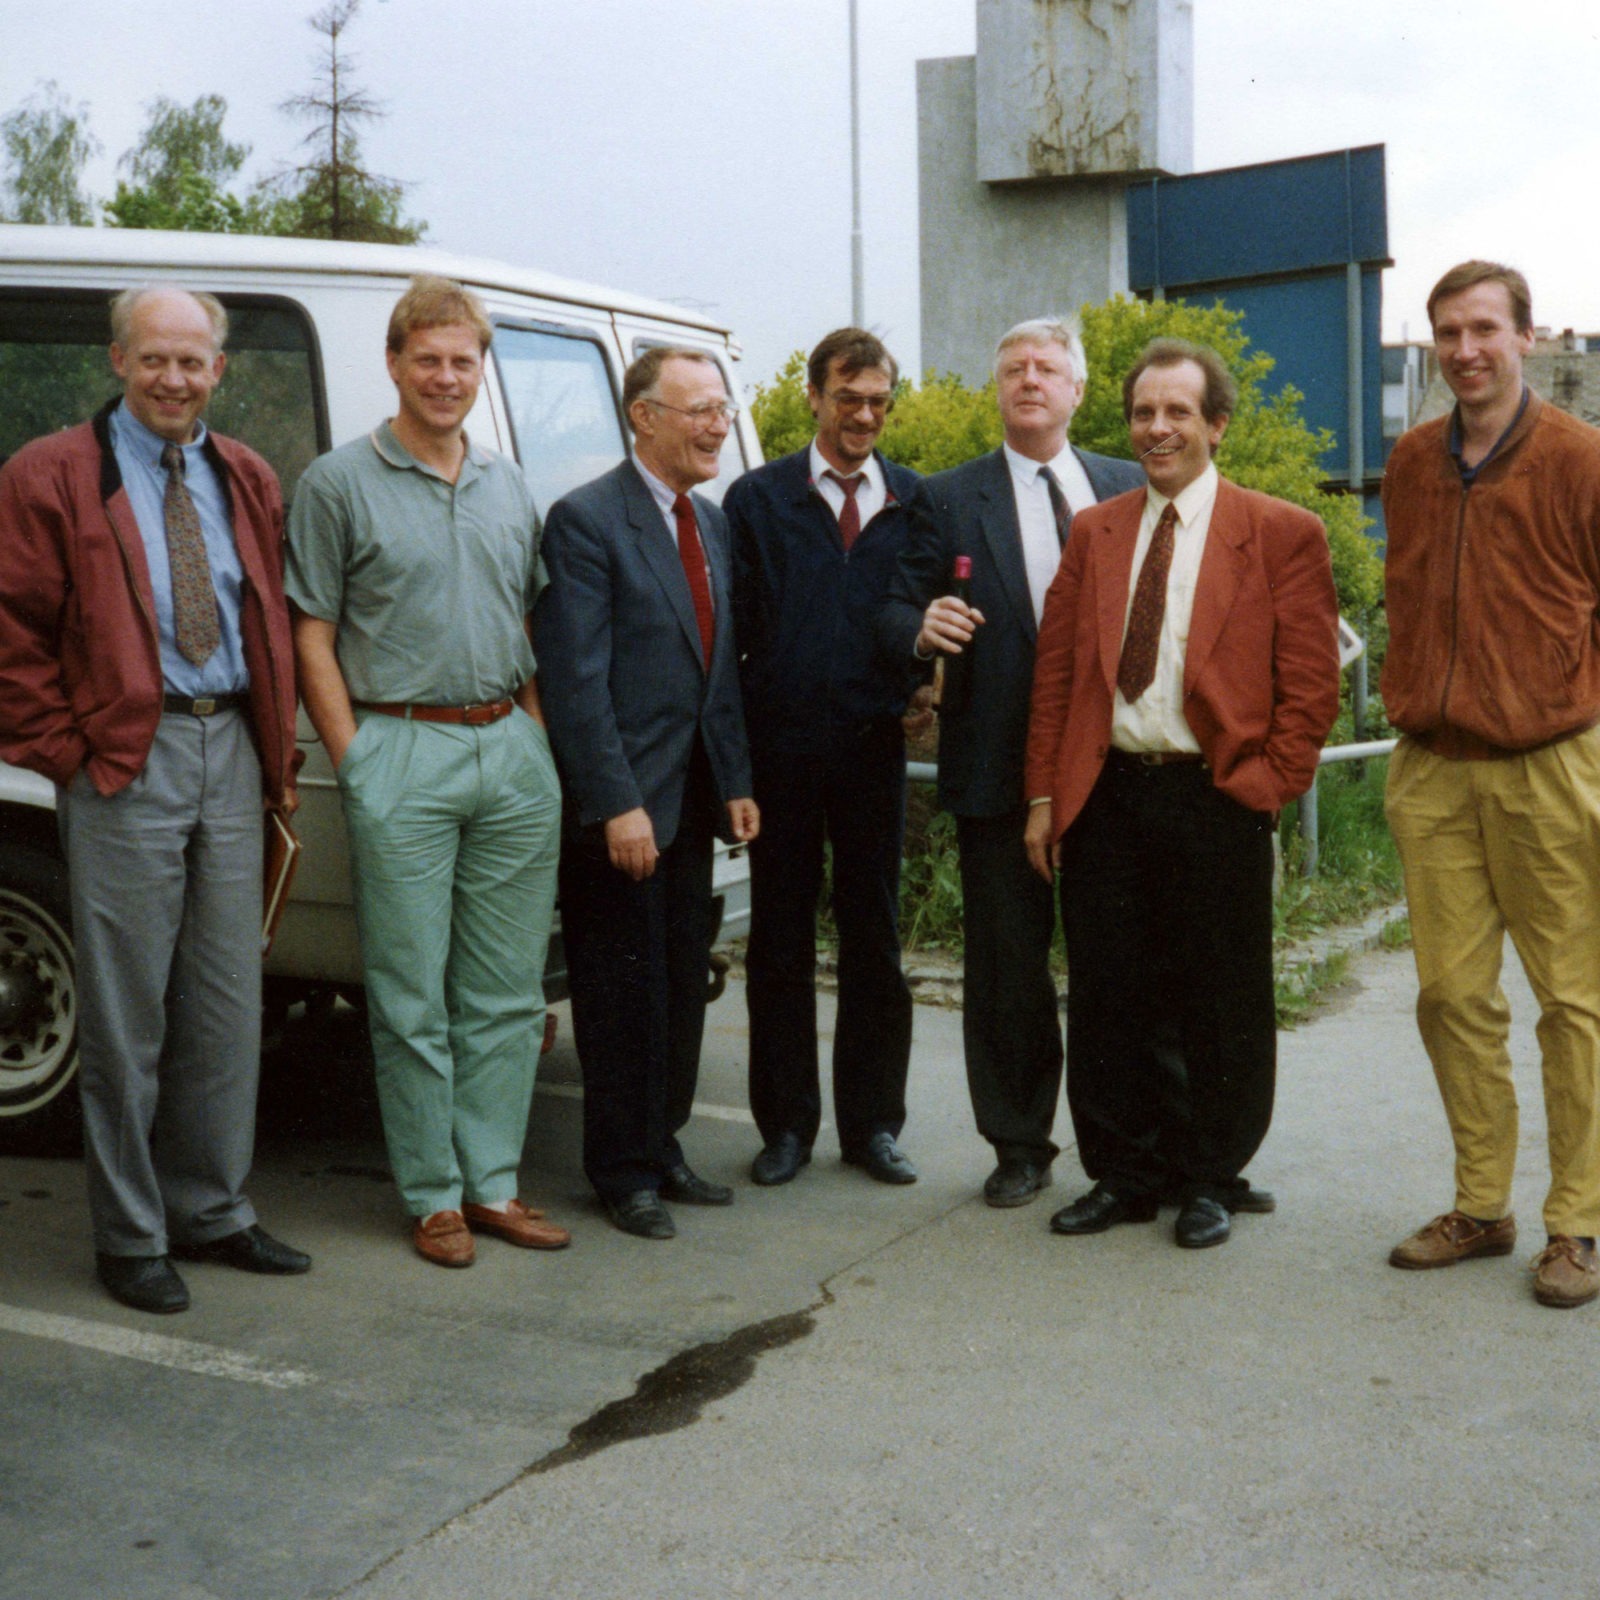 Siete hombres, vestidos al estilo formal de los años 80, ríen juntos en un aparcamiento de una fábrica.